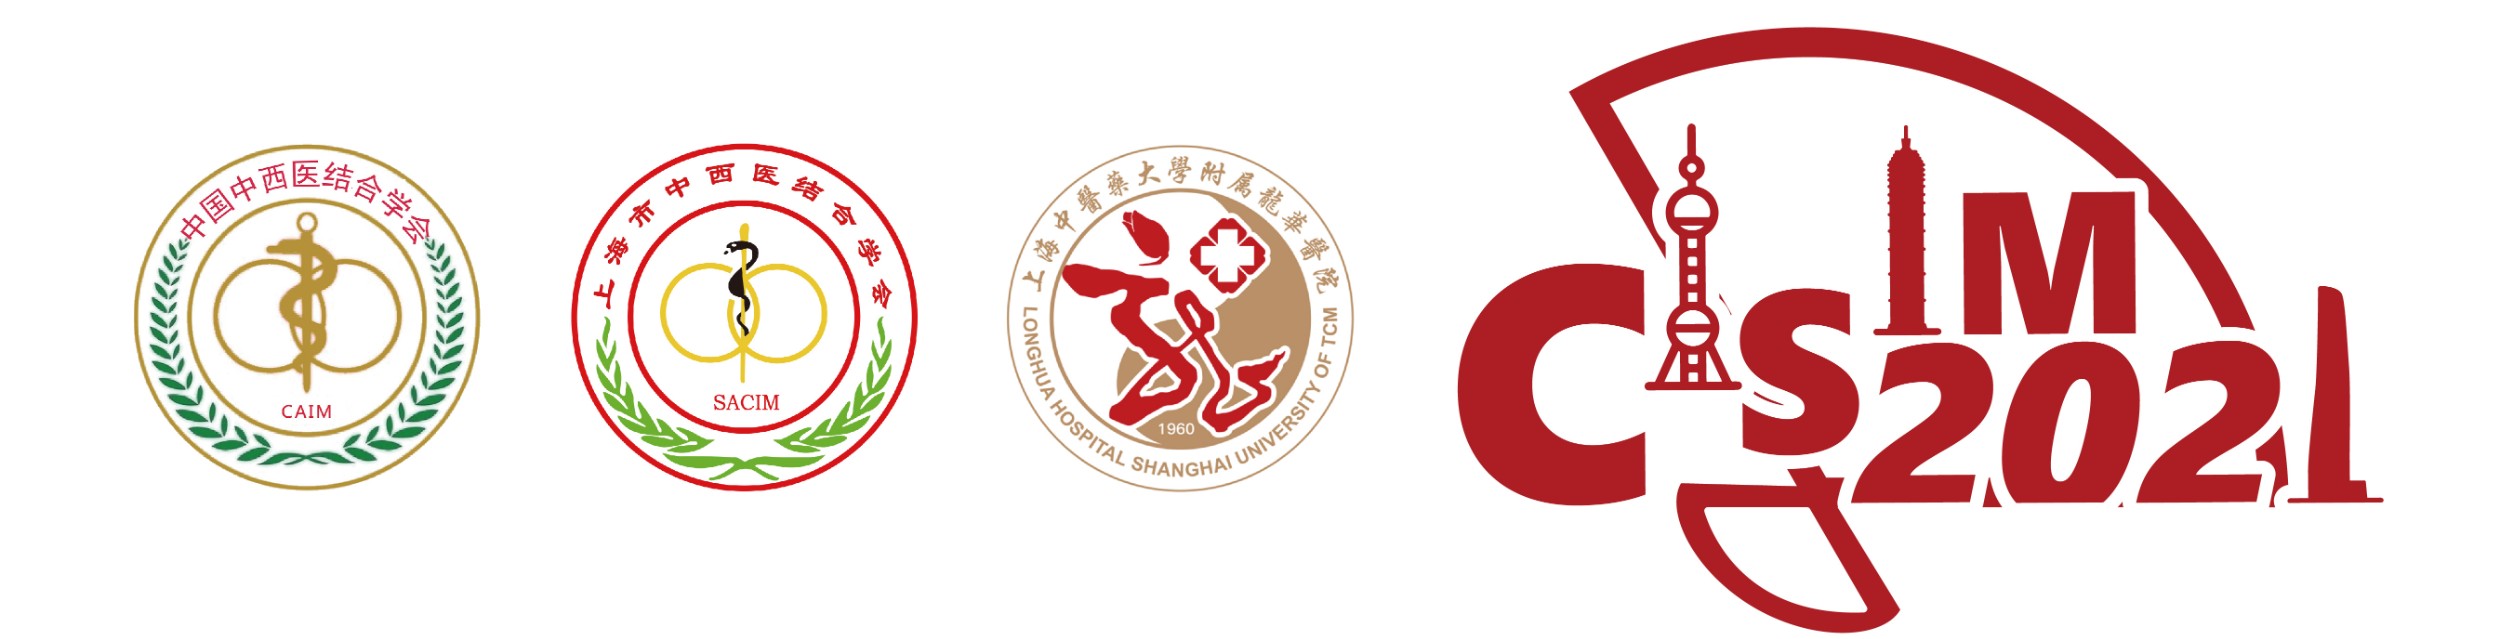 中国中西医结合学会医学影像专业委员会第十九次学术年会